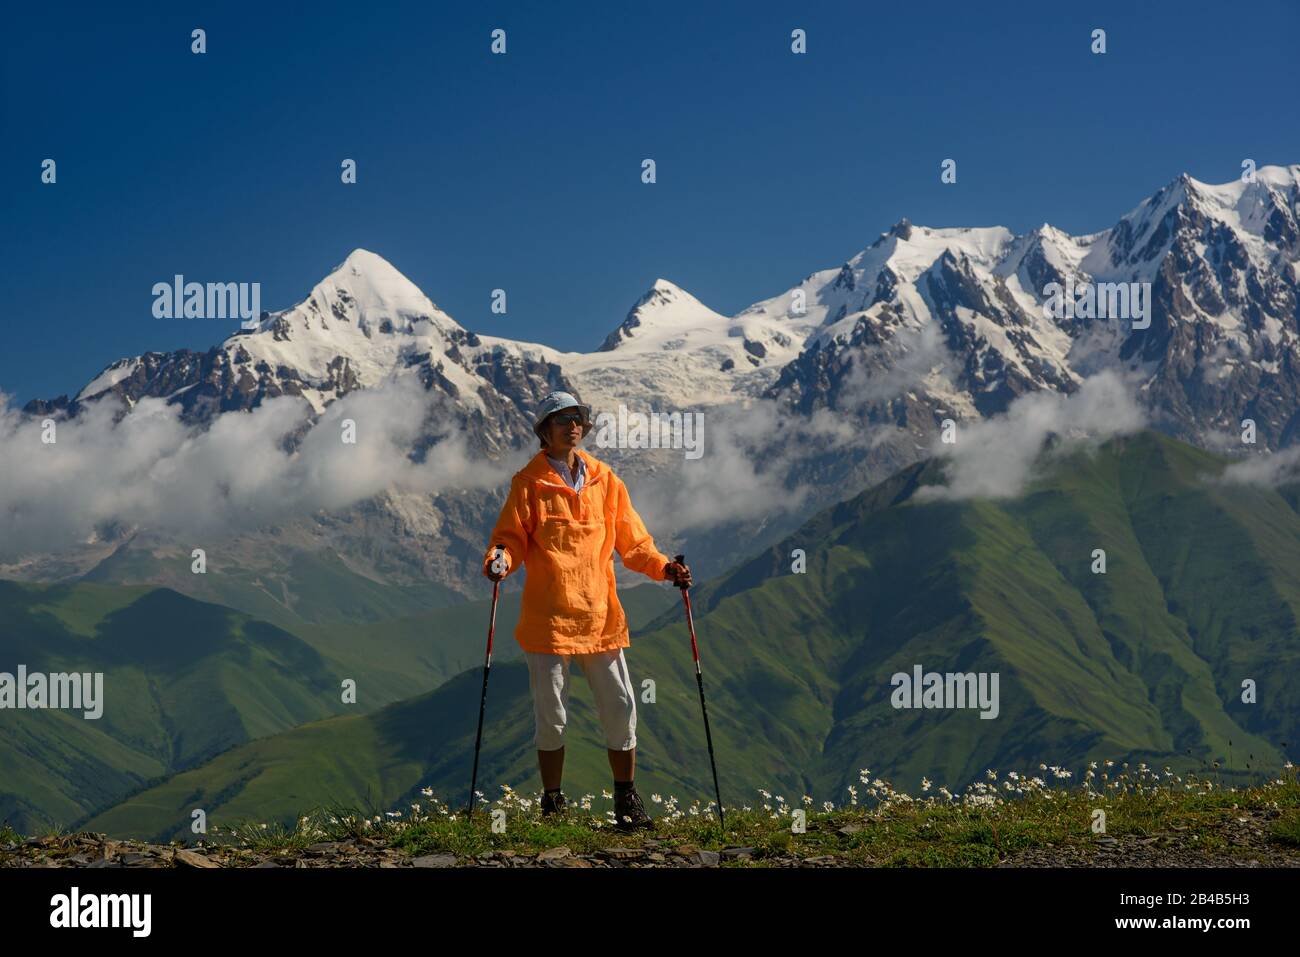 Tourist mit orangefarbener Jacke gegen Berge mit Schneehintergrund gekleidet. Alpenwiese mit weißen Blumen im Vordergrund. Stockfoto